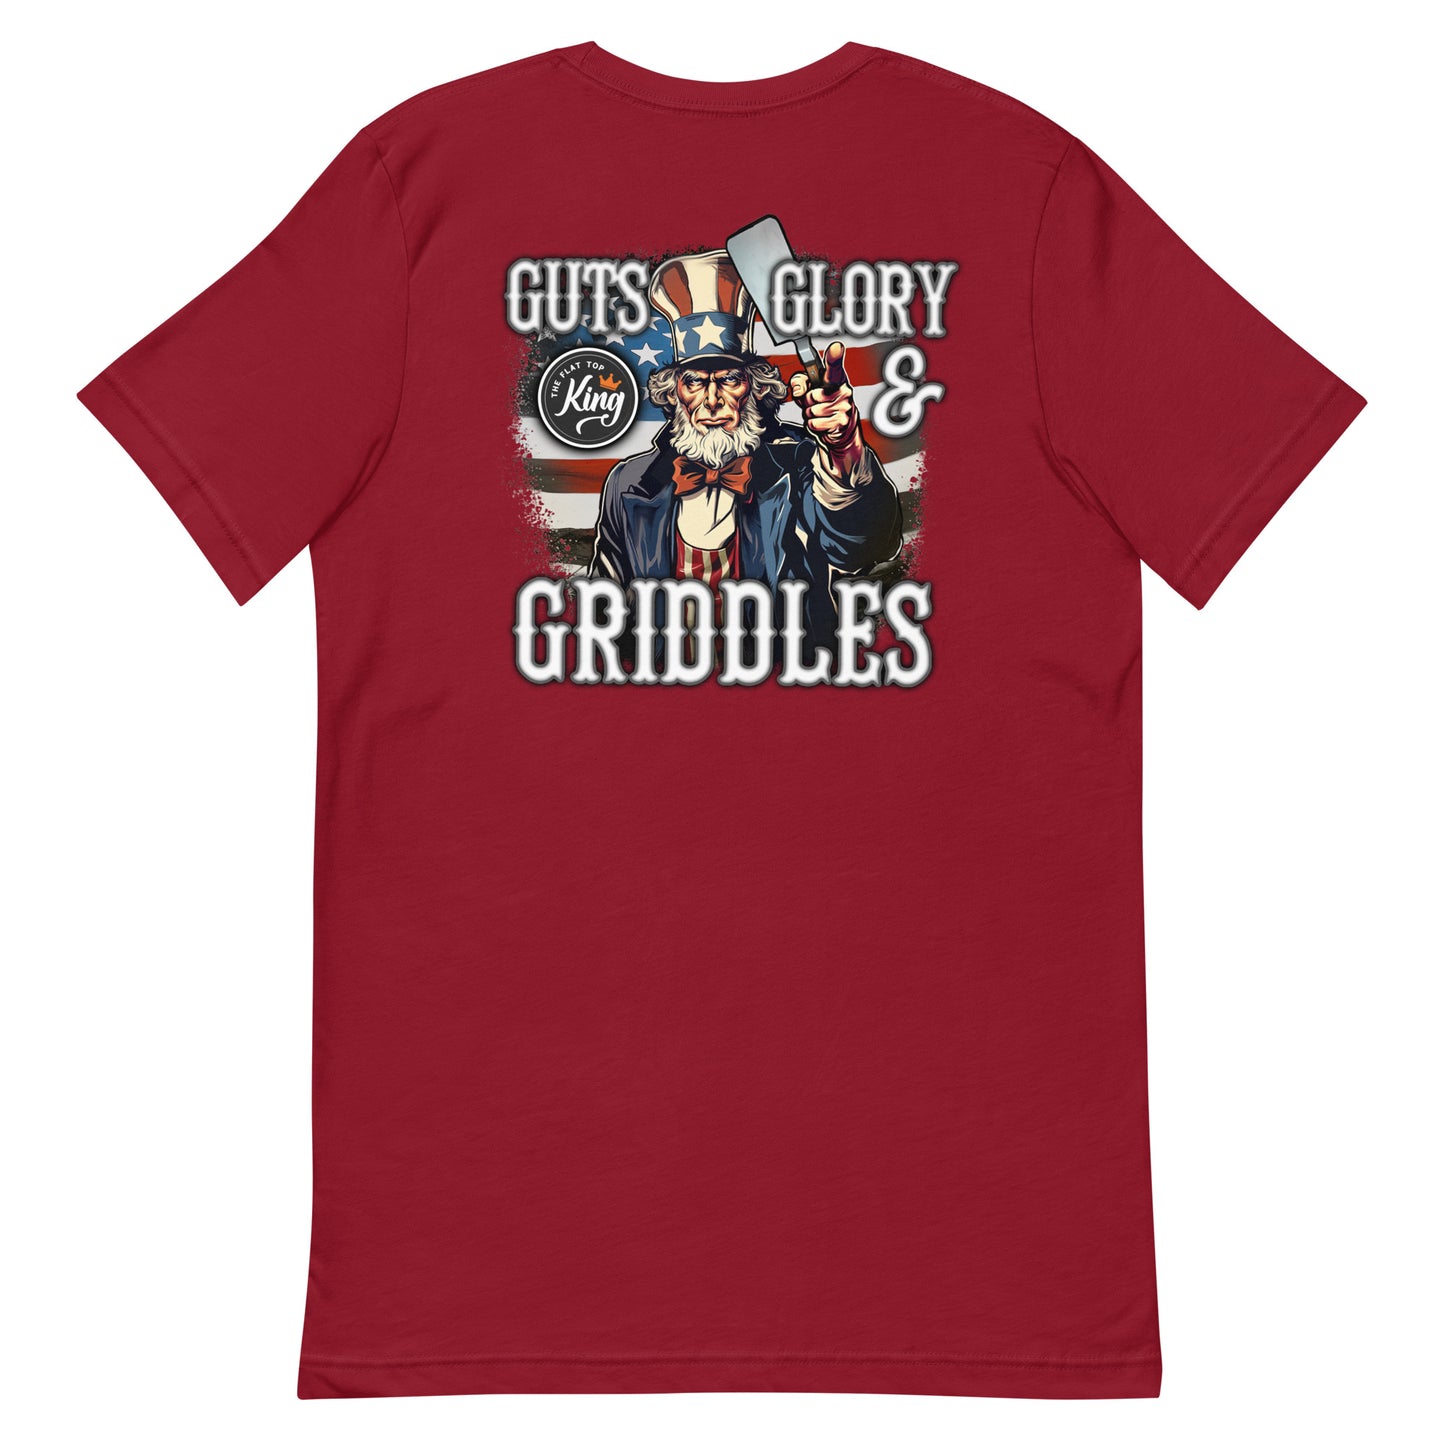 Guts Glory Griddles Shirt